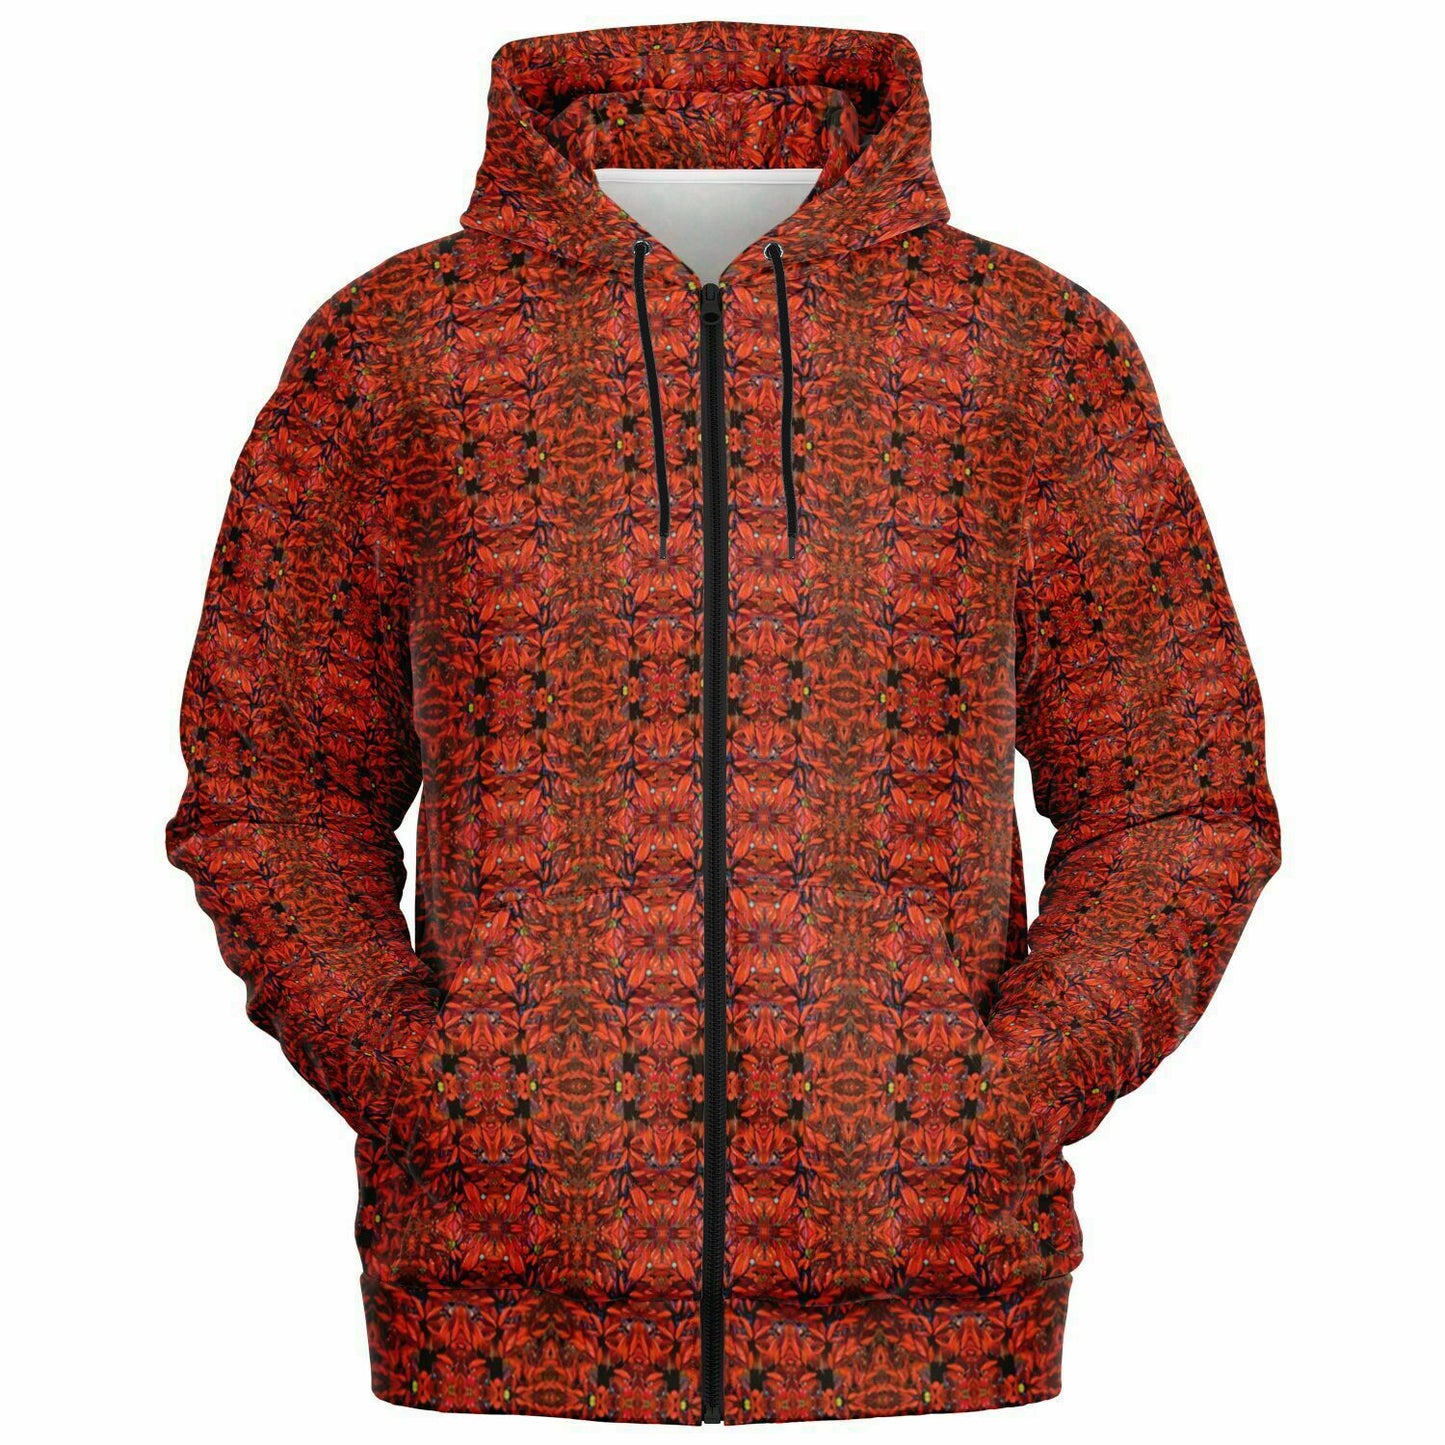 Designer full zip red hoodie